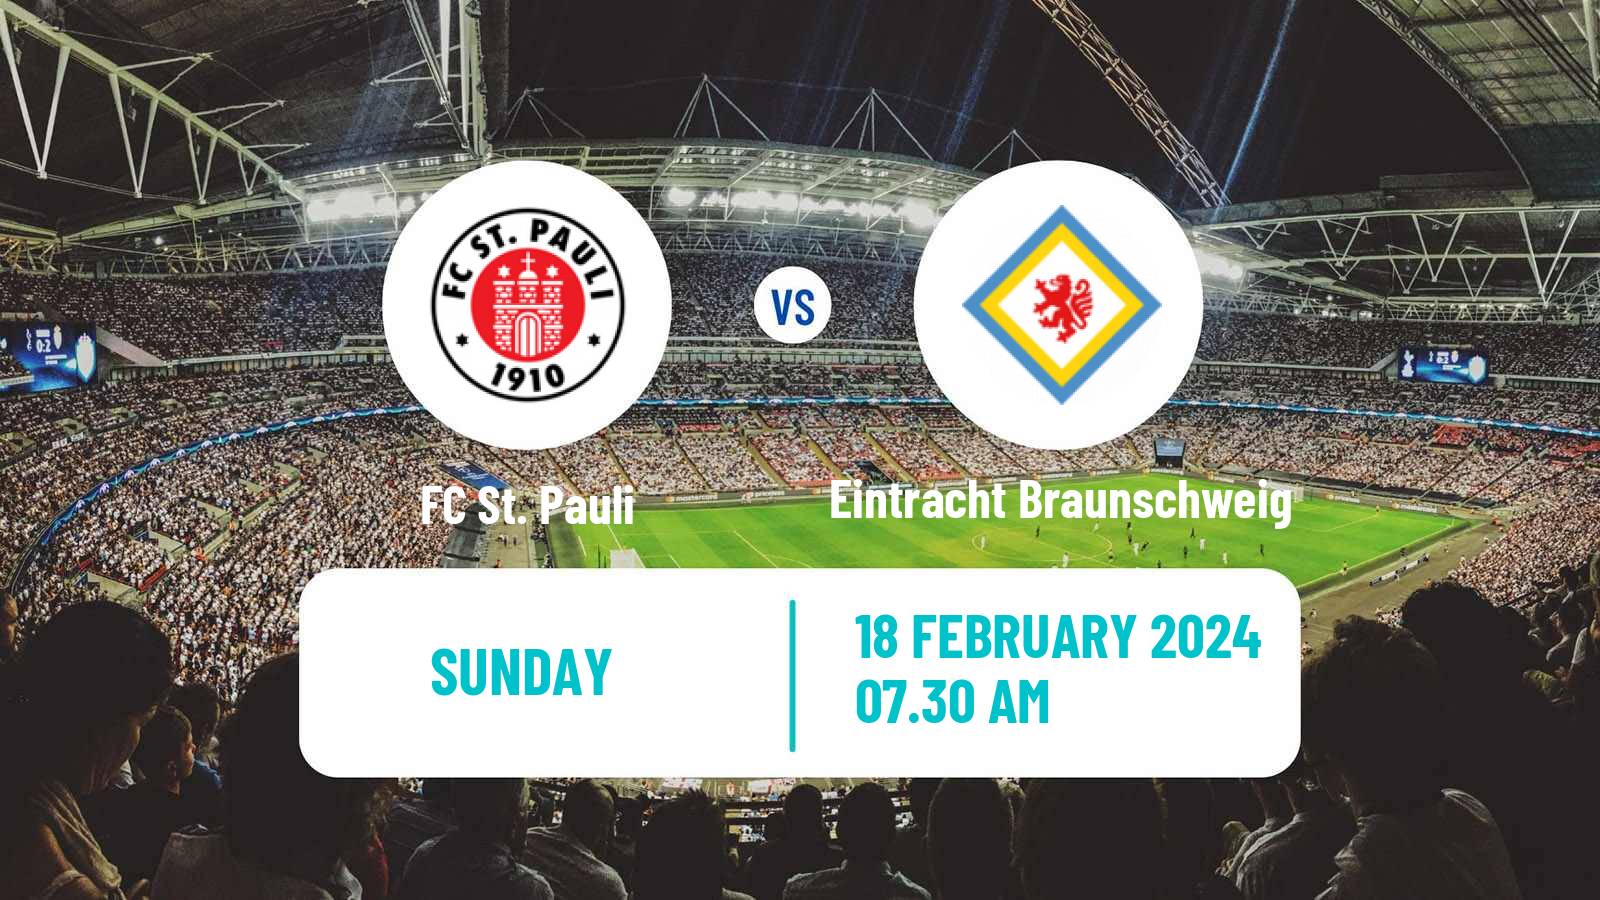 Soccer German 2 Bundesliga St. Pauli - Eintracht Braunschweig